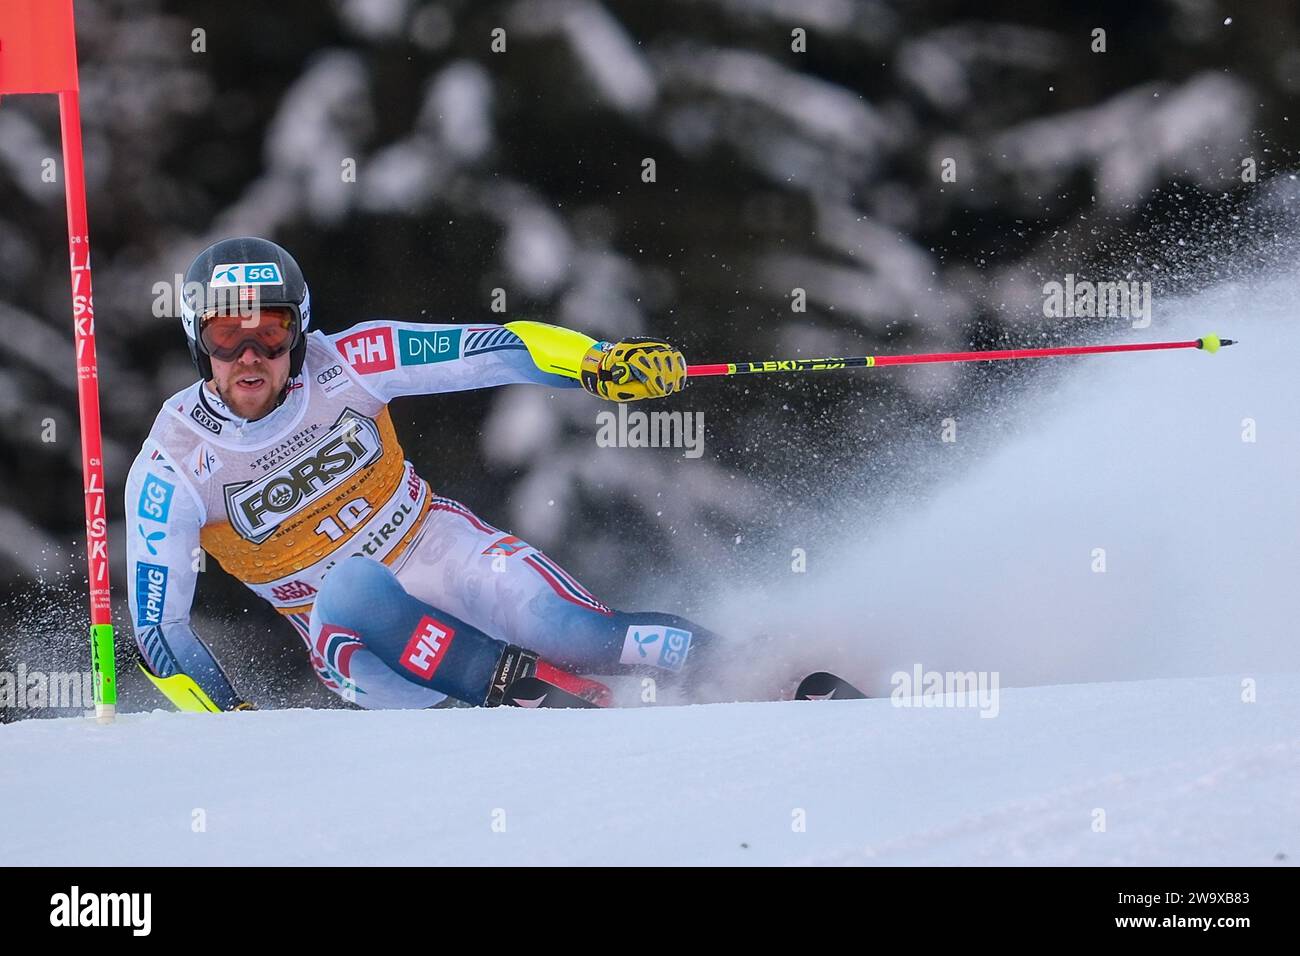 Aleksander Aamodt Kilde (NOR) gareggia durante la Coppa del mondo di sci alpino Audi FIS, MenÕs gara di slalom gigante sulla pista Gran Risa, alta Badia il 17 dicembre Foto Stock